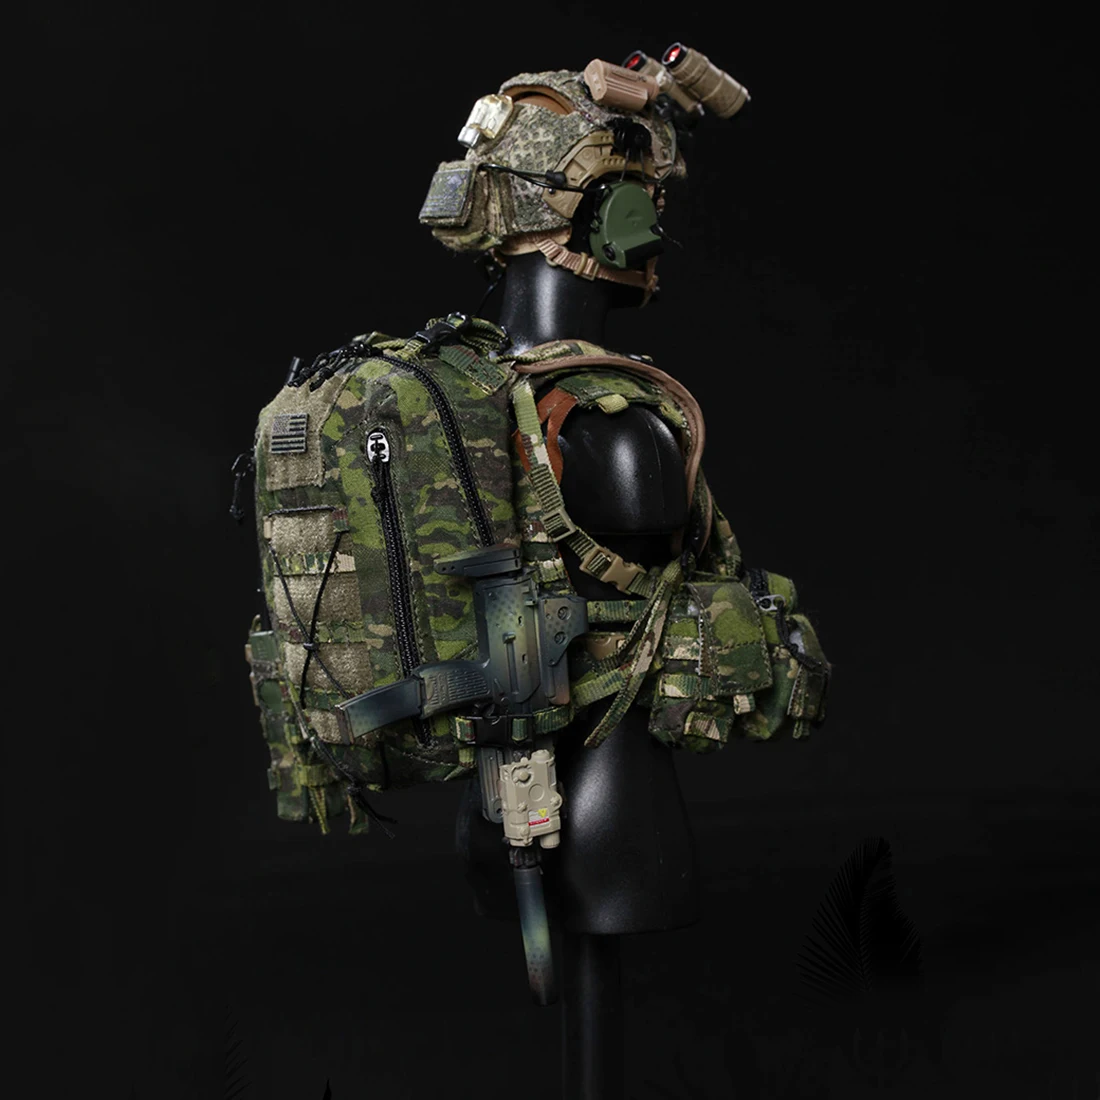 NFSTRIKE 1/6 30 см модель солдата Реалистичная голова скульптура DIY подвижный Devgru джунгли декапитация Военная фигурка Мидель игрушка для взрослых